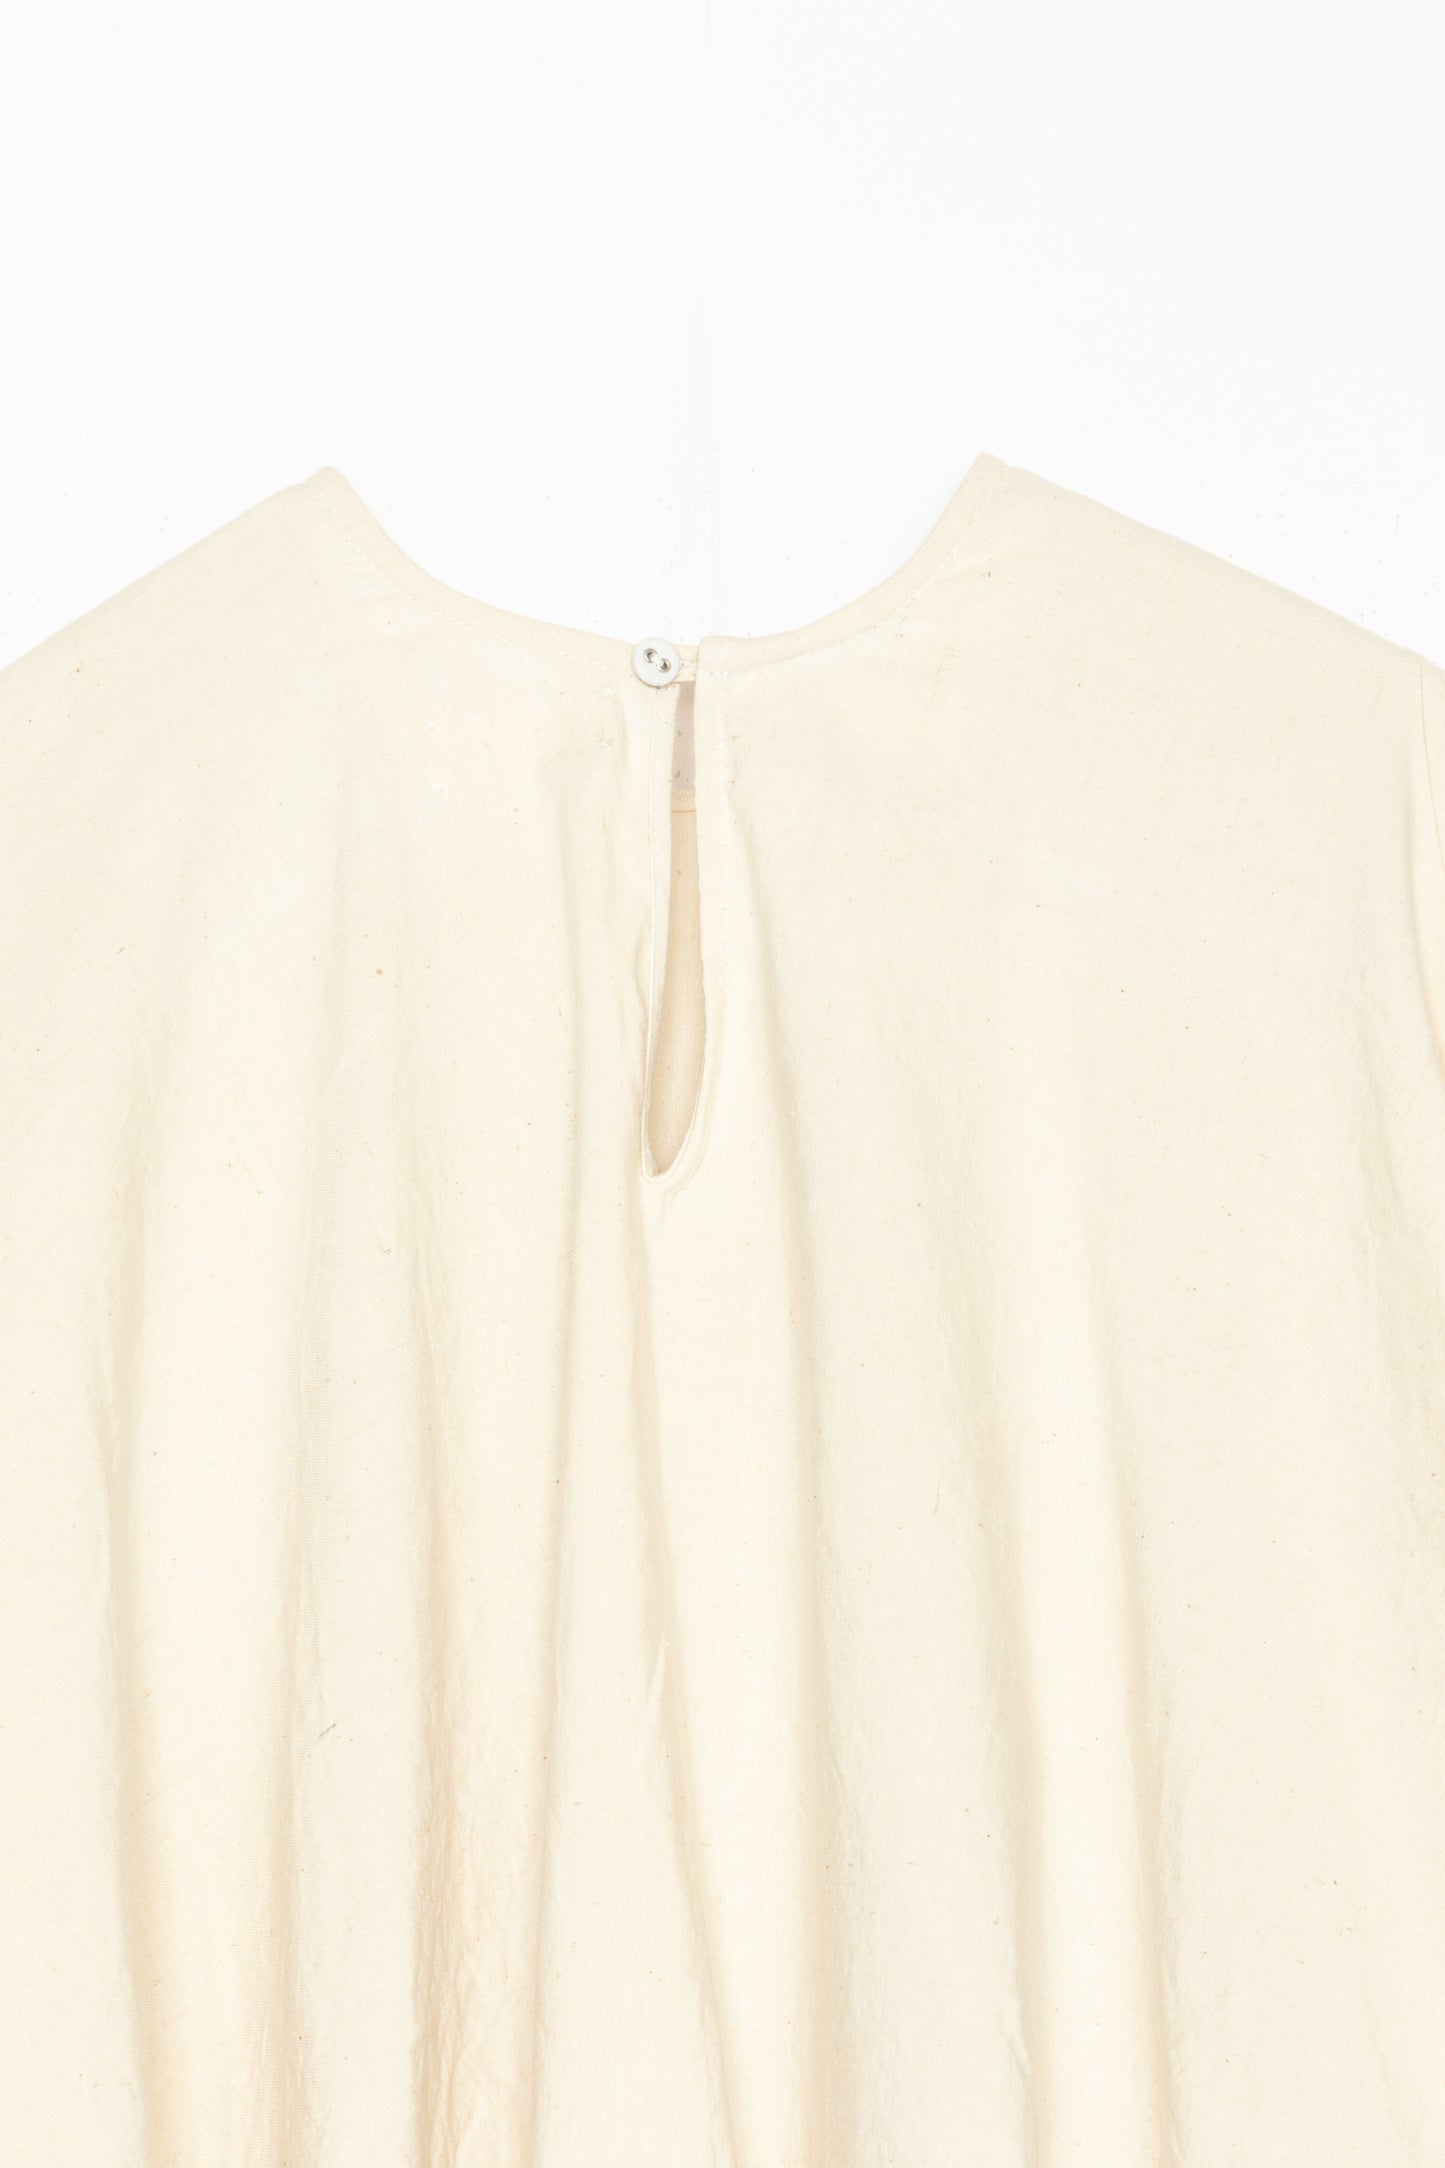 [Whiteread] Dress 15 - Salt Linen